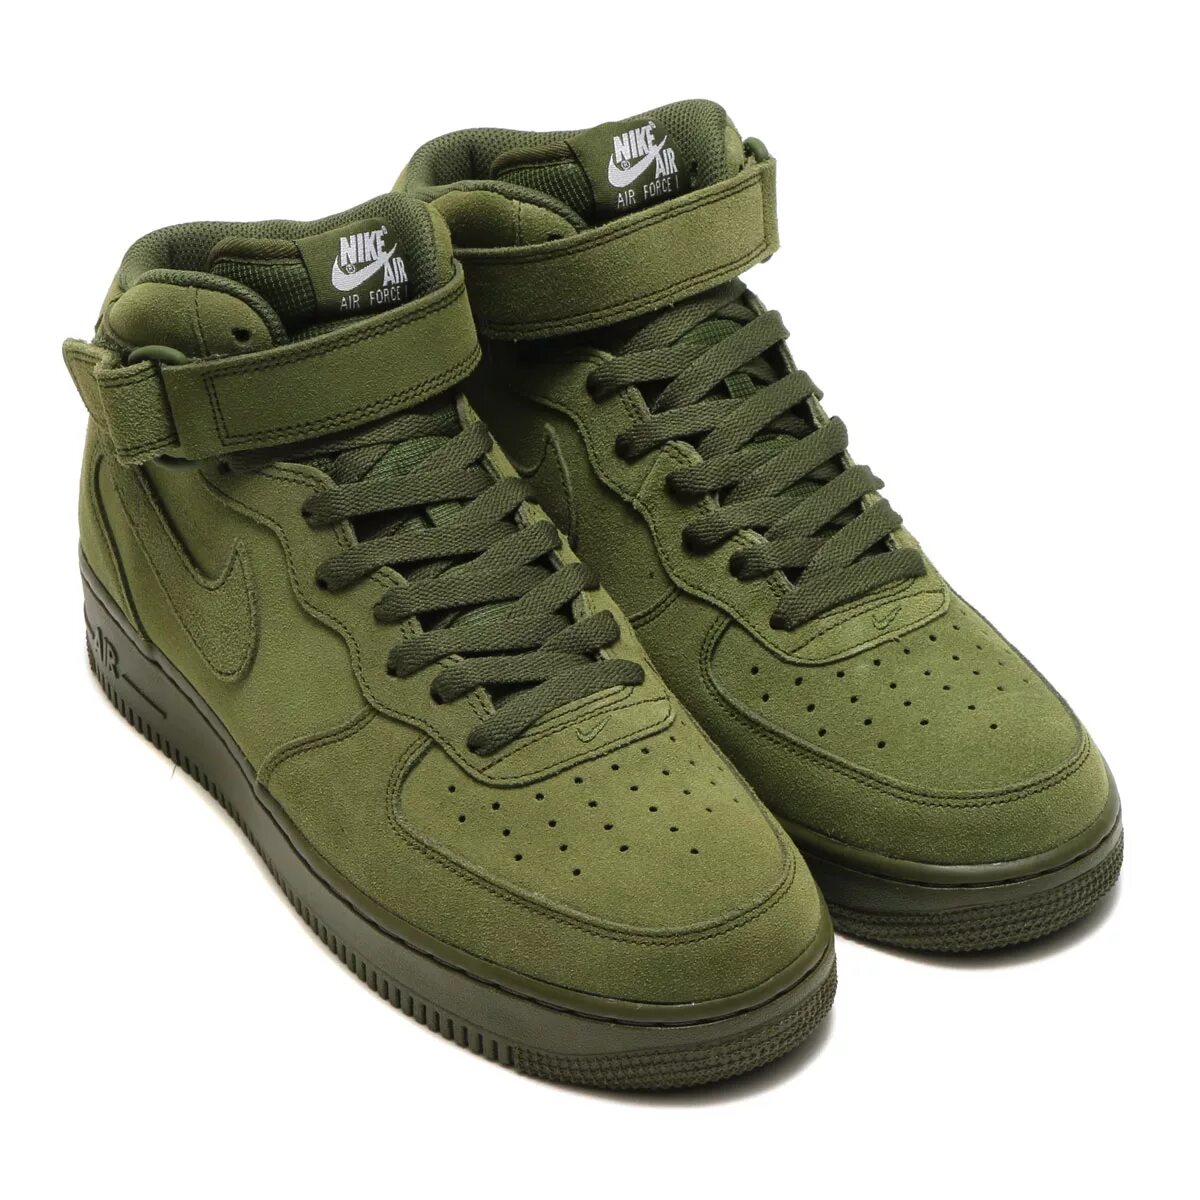 Найк форсы 1 зеленые. Nike Air Force 1 болотные. Nike Air Force 1 Mid Green. Найк АИР Форс зеленые.